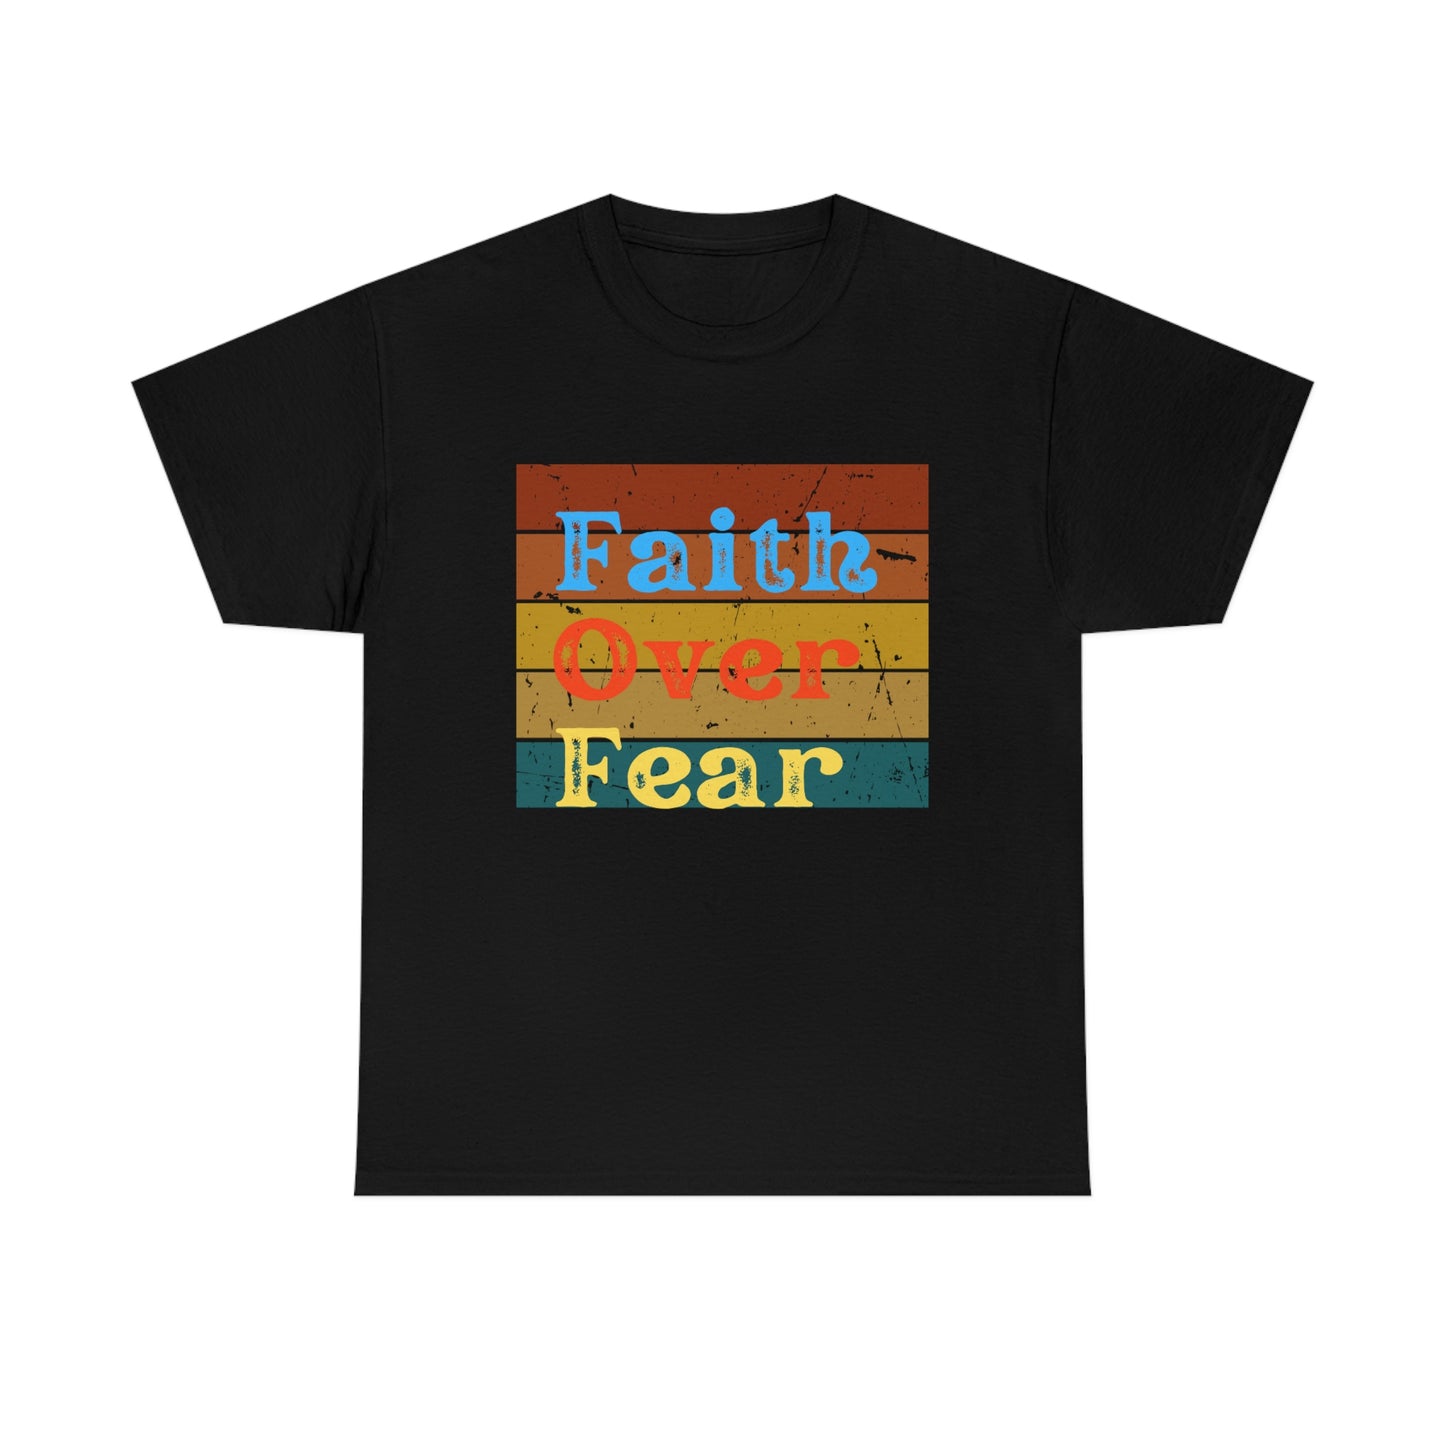 Faith Over Fear - Women's Christian Cotton Tee